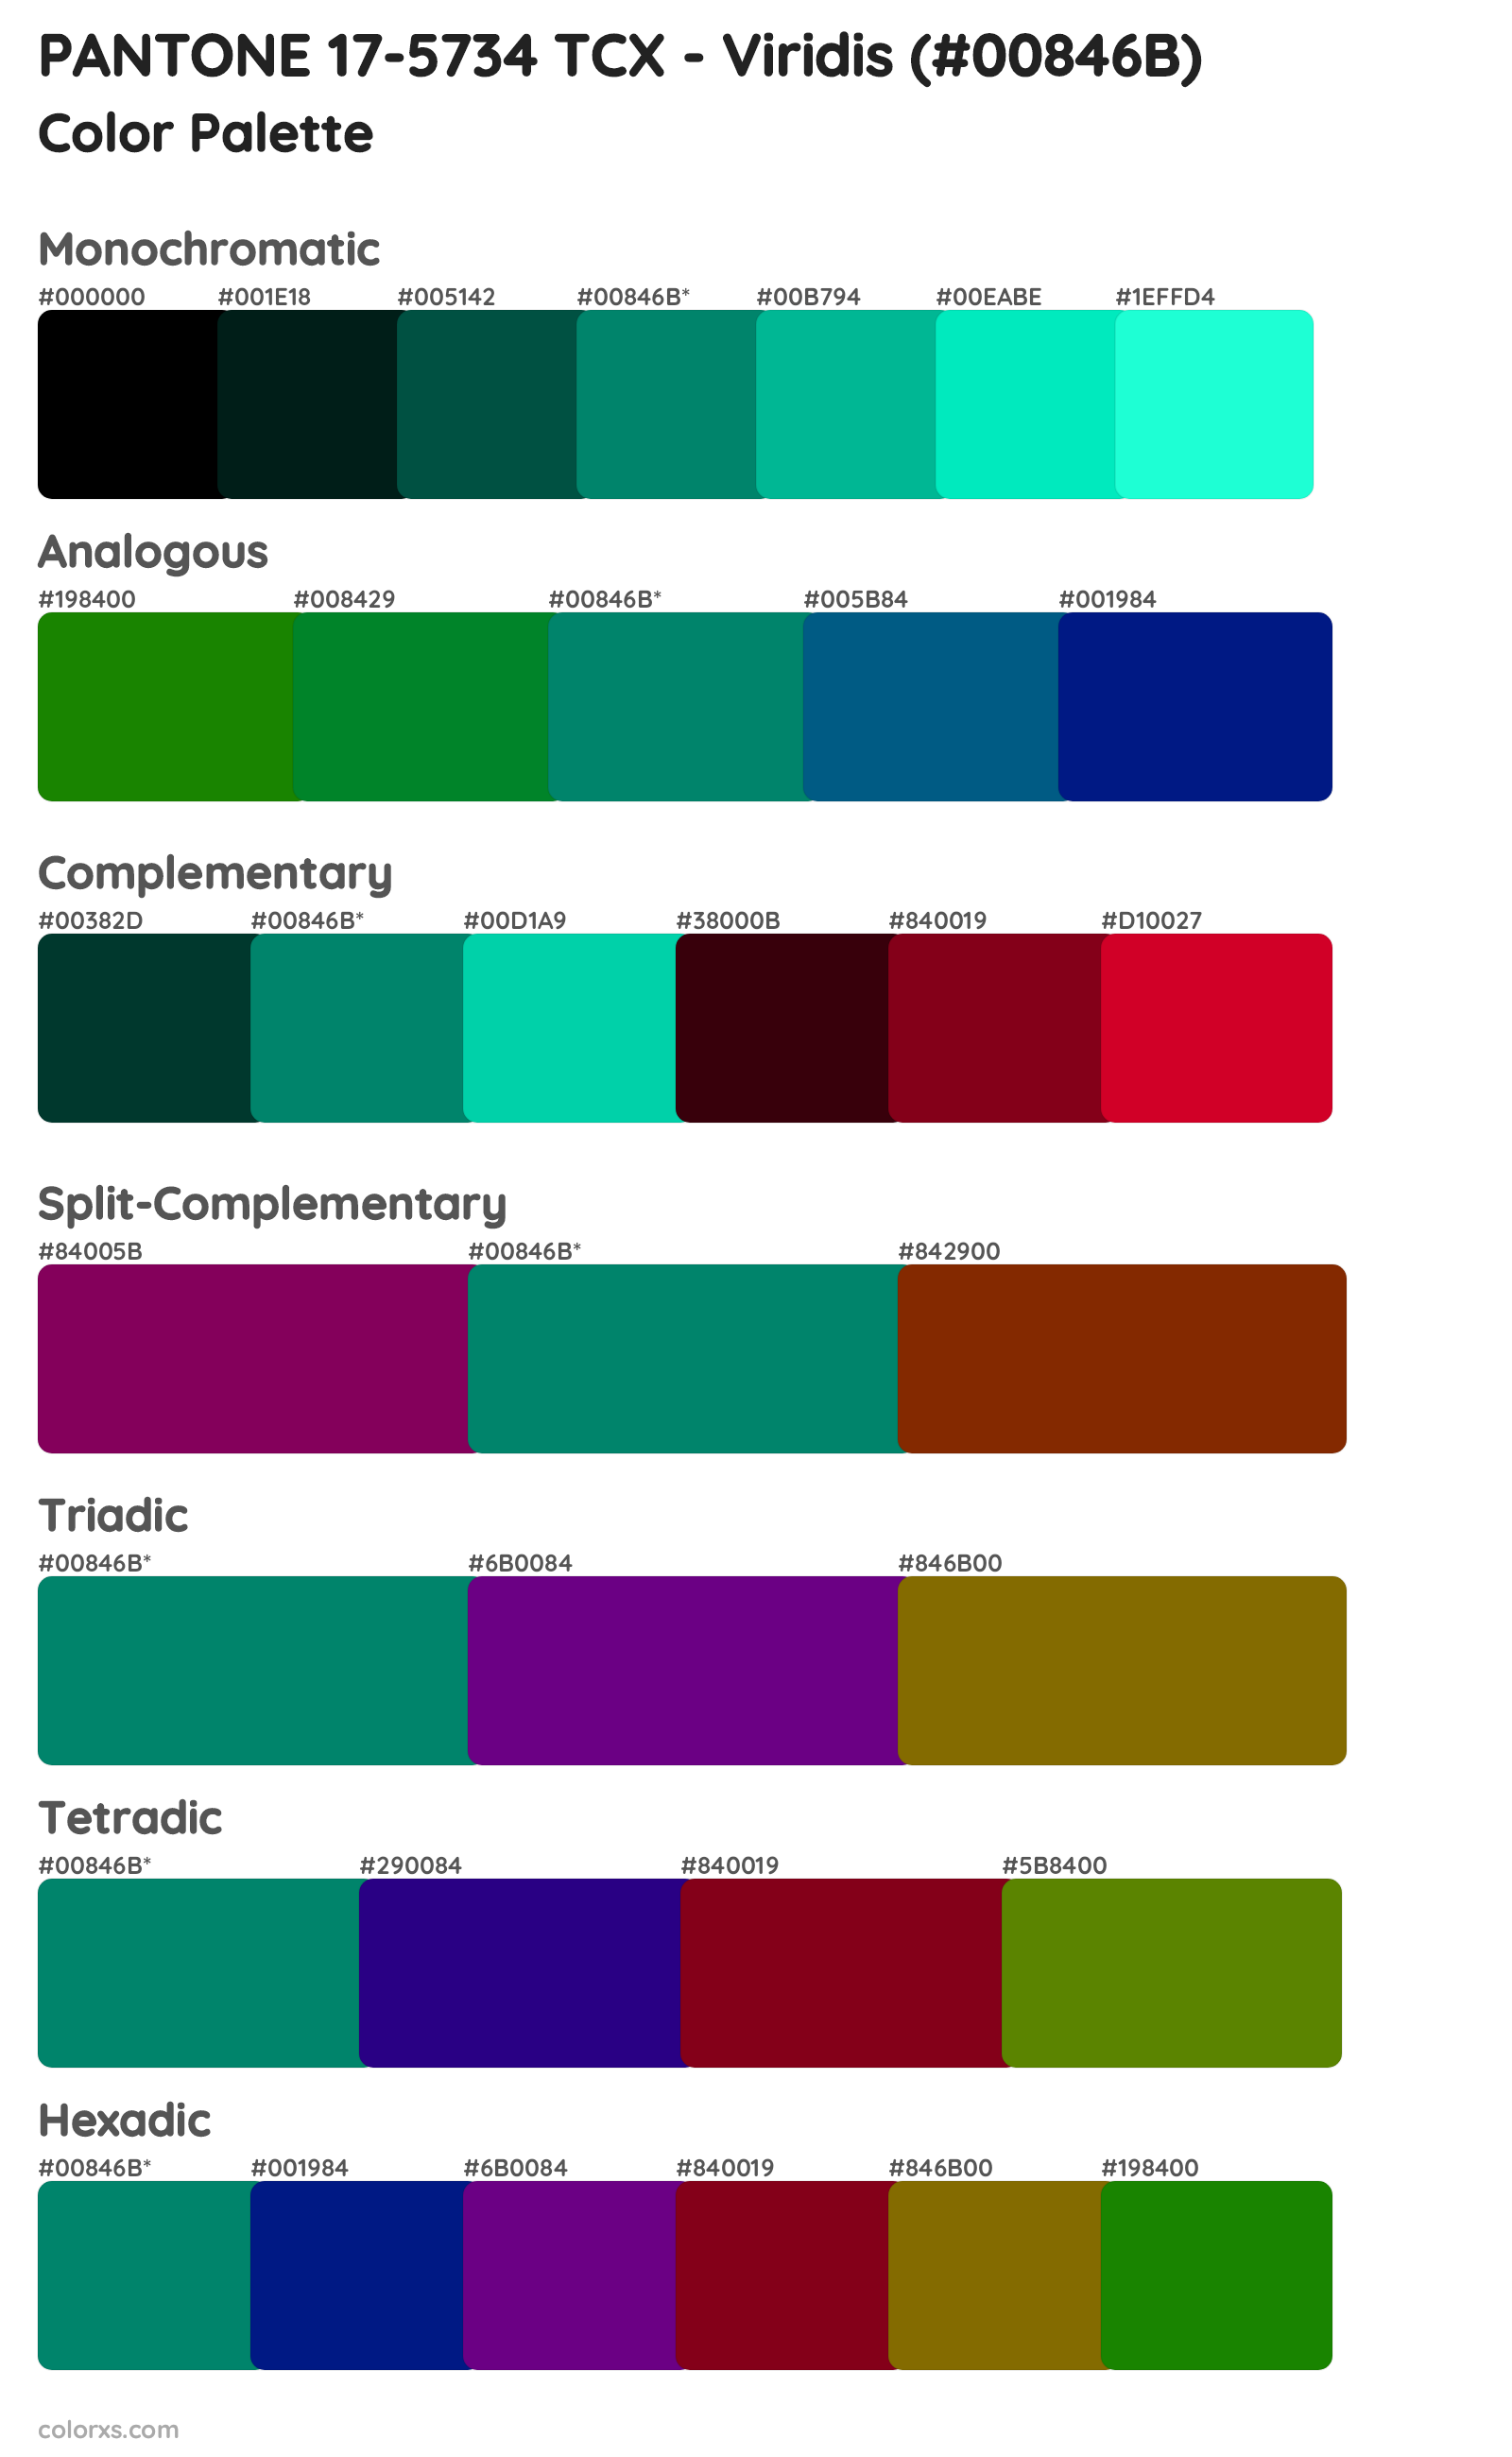 PANTONE 17-5734 TCX - Viridis Color Scheme Palettes